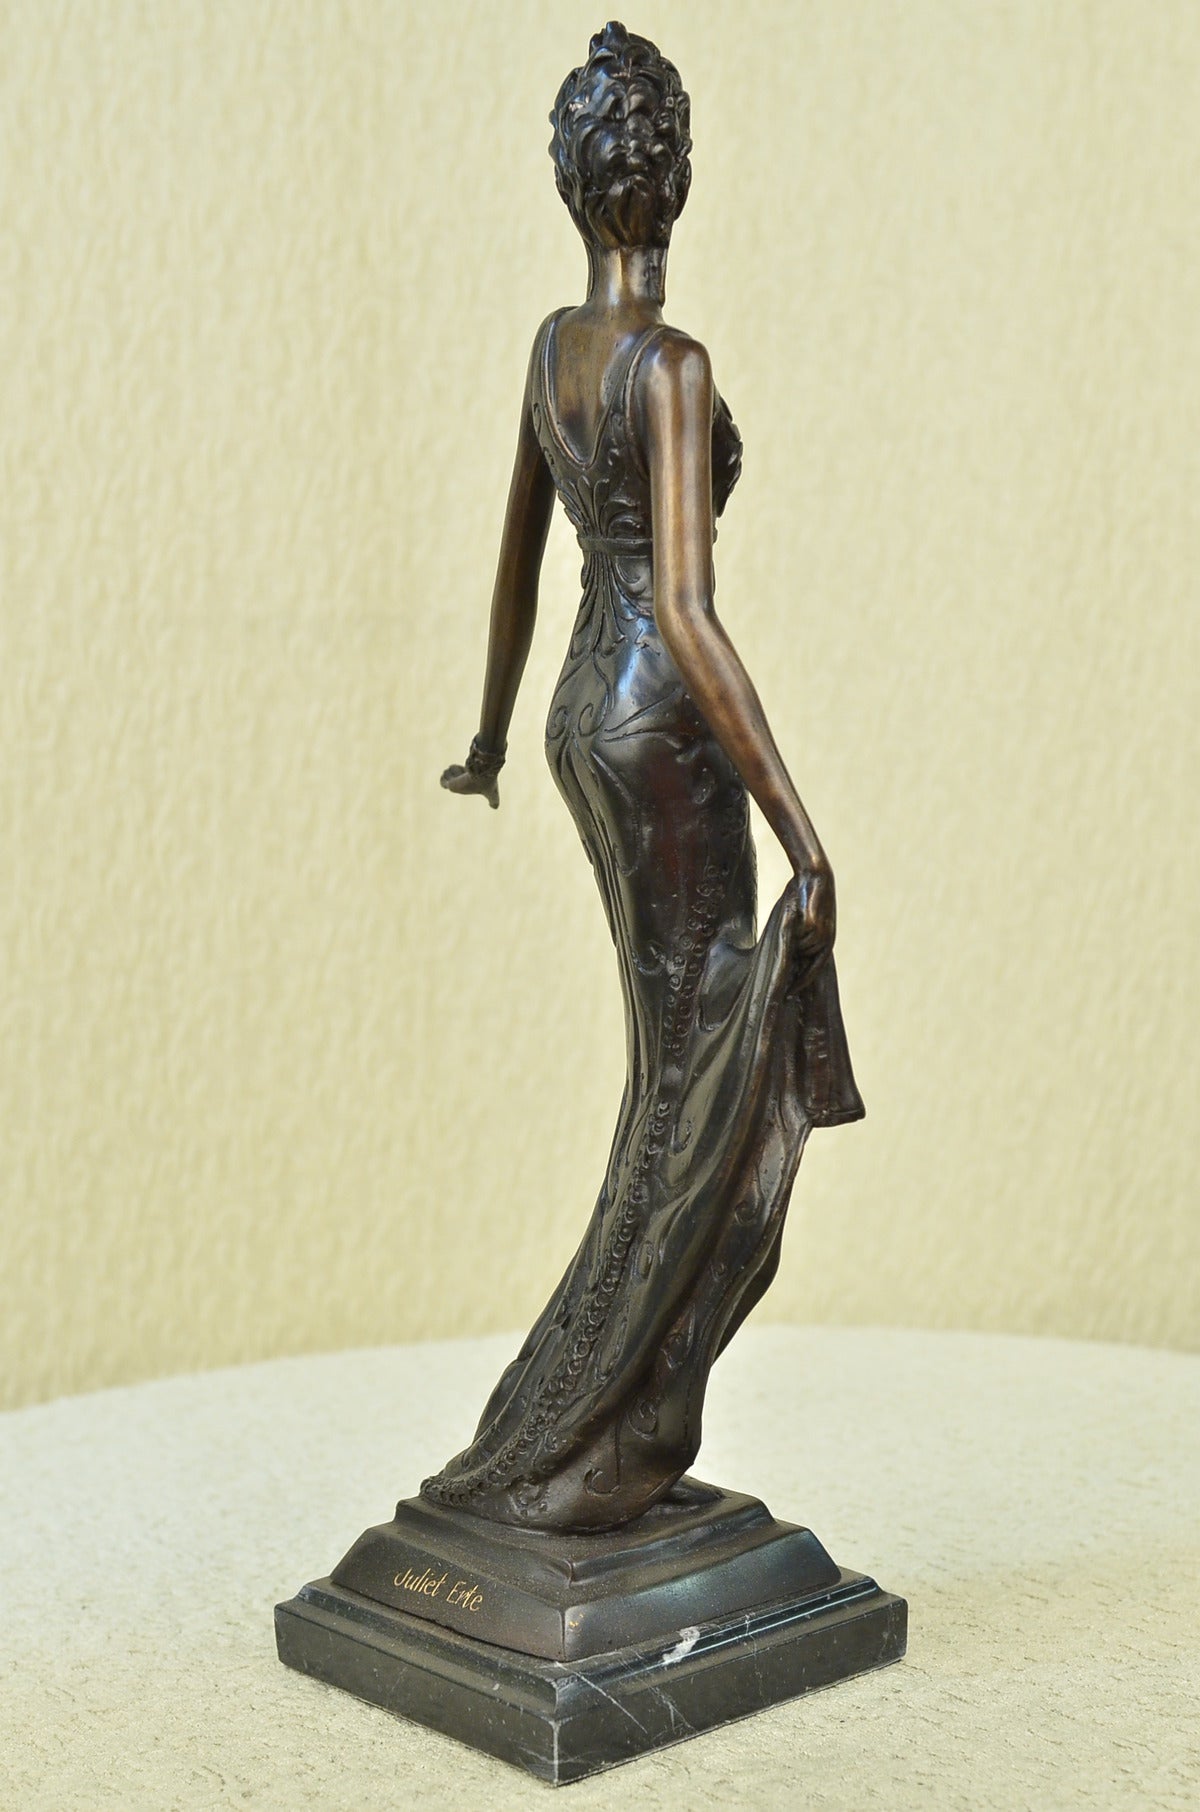 100% Solid Bronze Sculpture Art Deco/Nouveau Gorgeous Woman Lost Wax Method